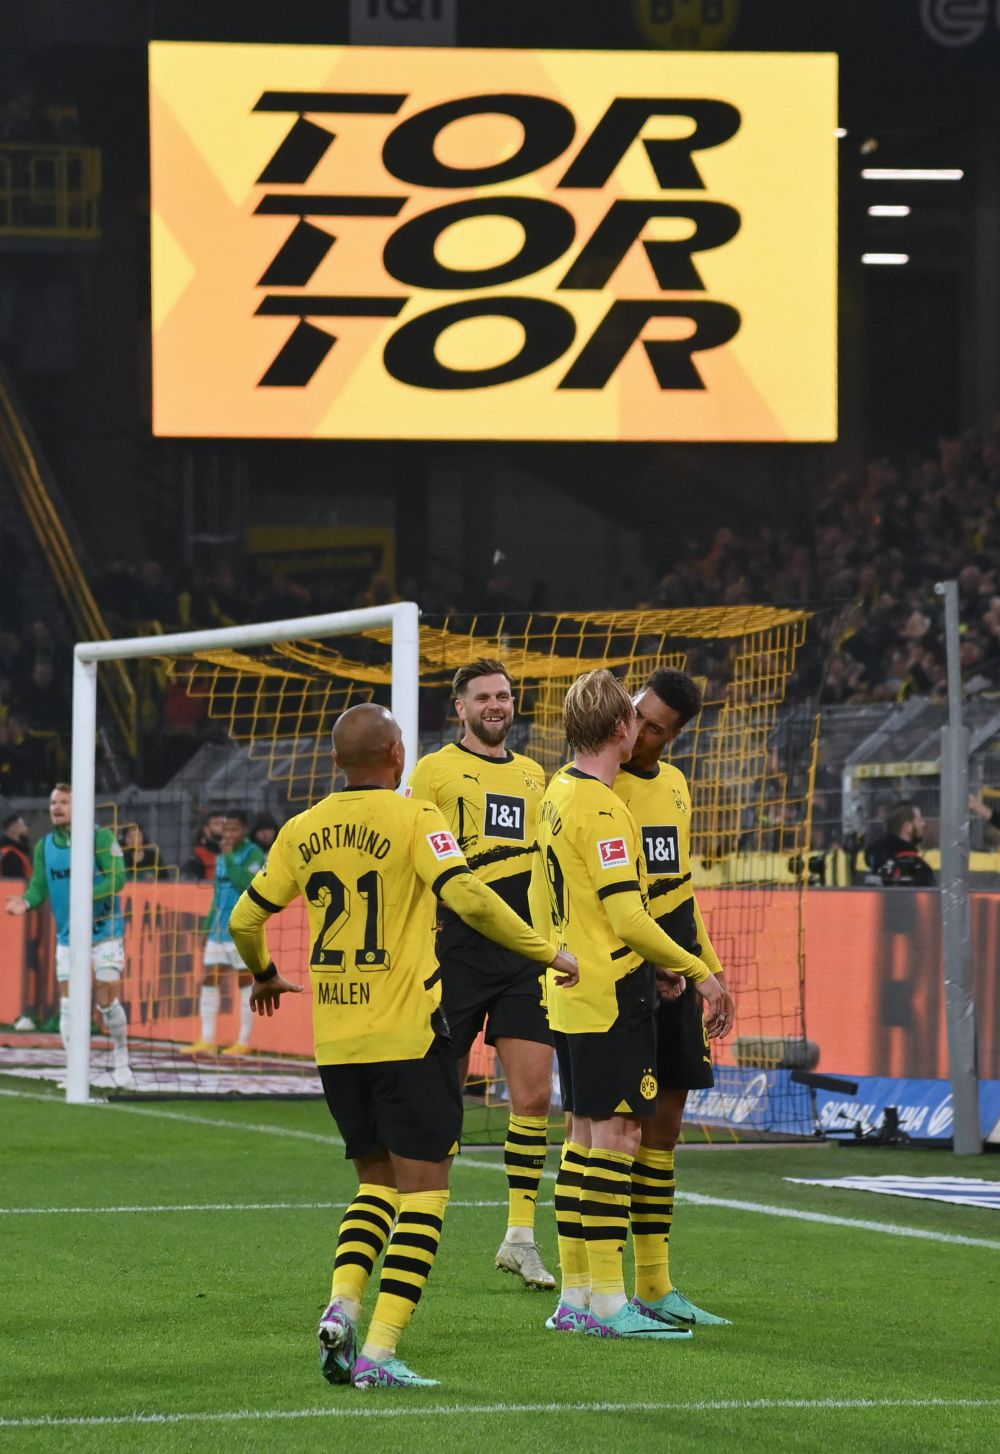 One man show în Borussia Dortmund - Werder Bremen 1-0! Gol decisiv pentru locul 1 în Bundesliga la meciul cu numărul 300, record pentru acest secol_2